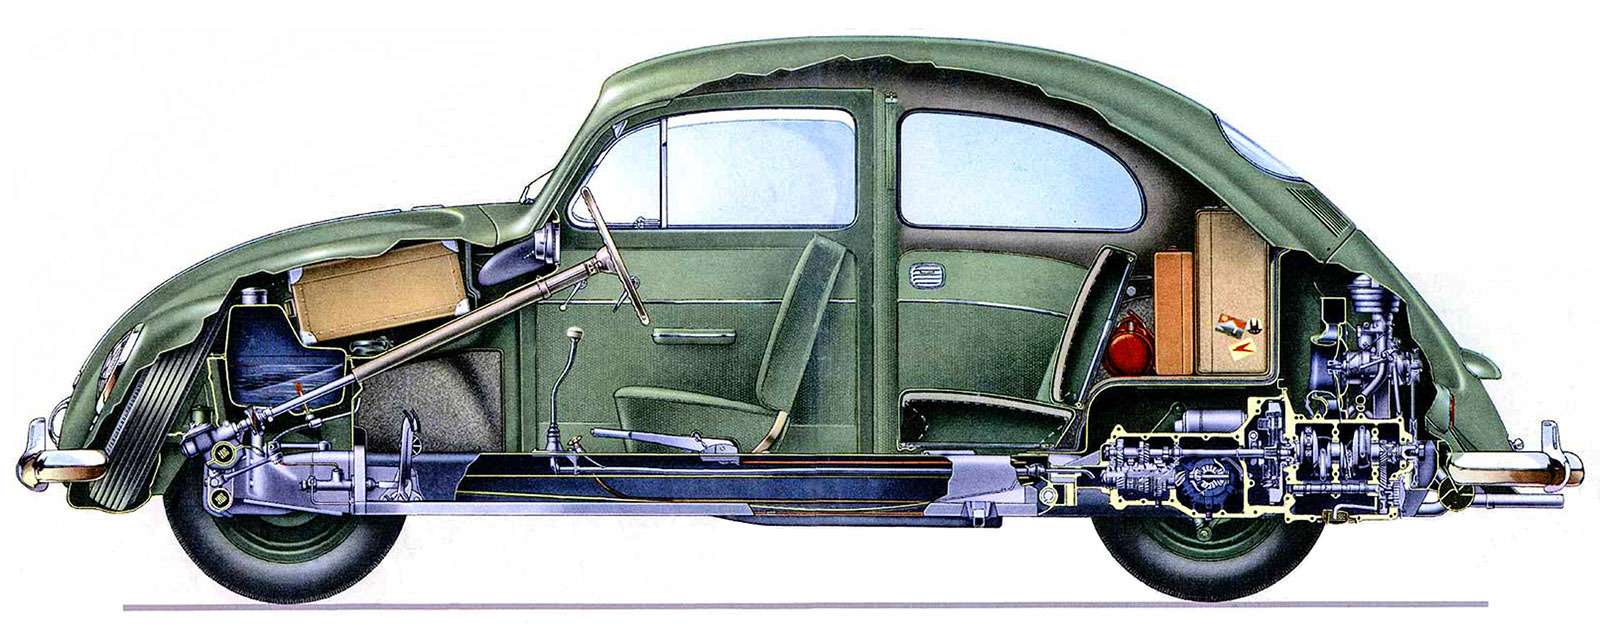 Народный автомобиль доктора Порше превратился в серийный KdF, а потом и в знаменитый массовый Volkswagen Käfer. Размещенный сзади низкий оппозитный двигатель воздушного охлаждения занимал минимум места. Подвеска тоже компактная – торсионная.